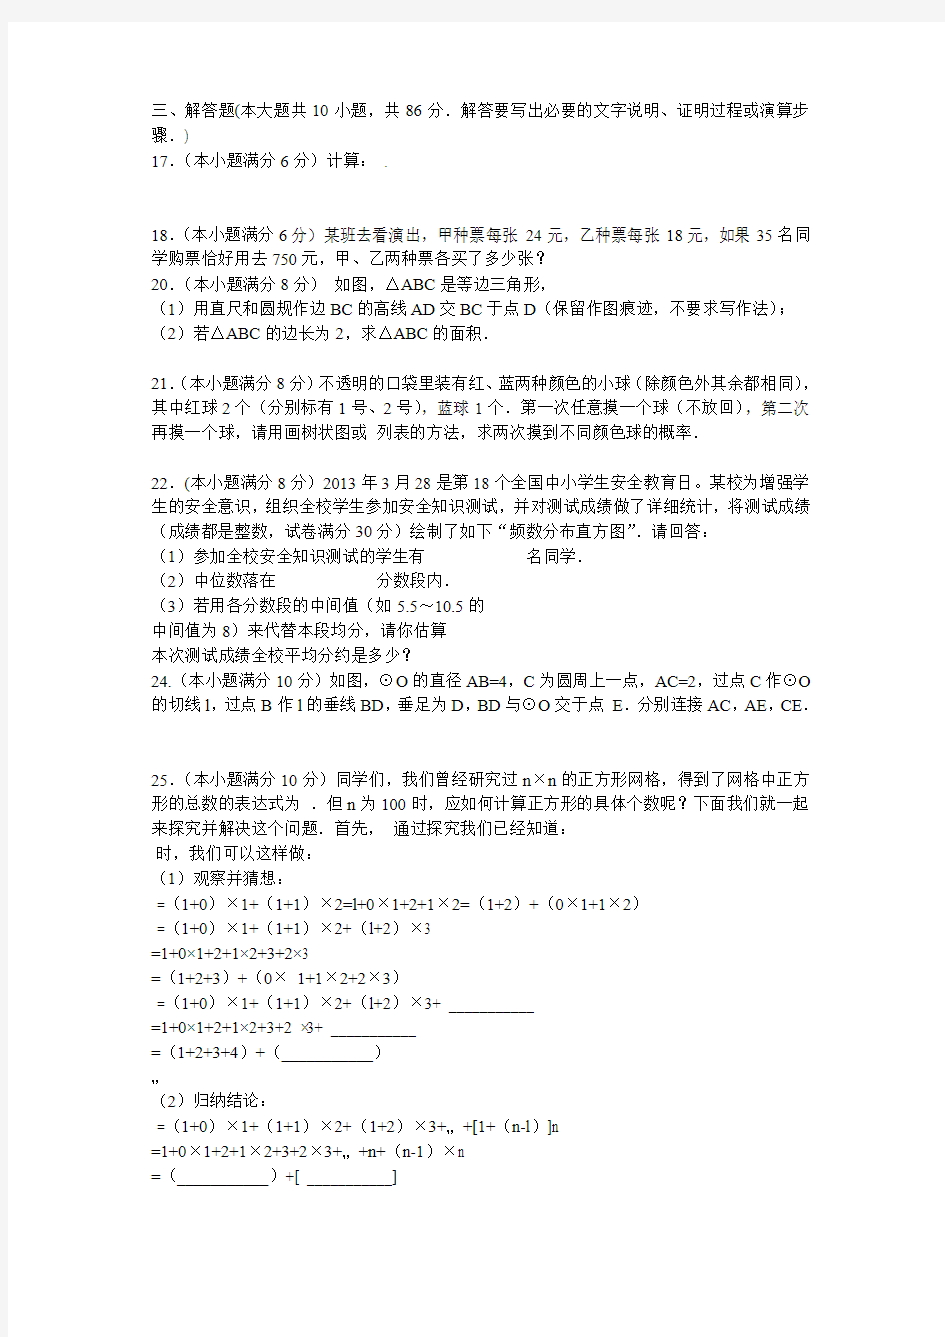 2011北京市朝阳区九年级综合练习数学试题答案